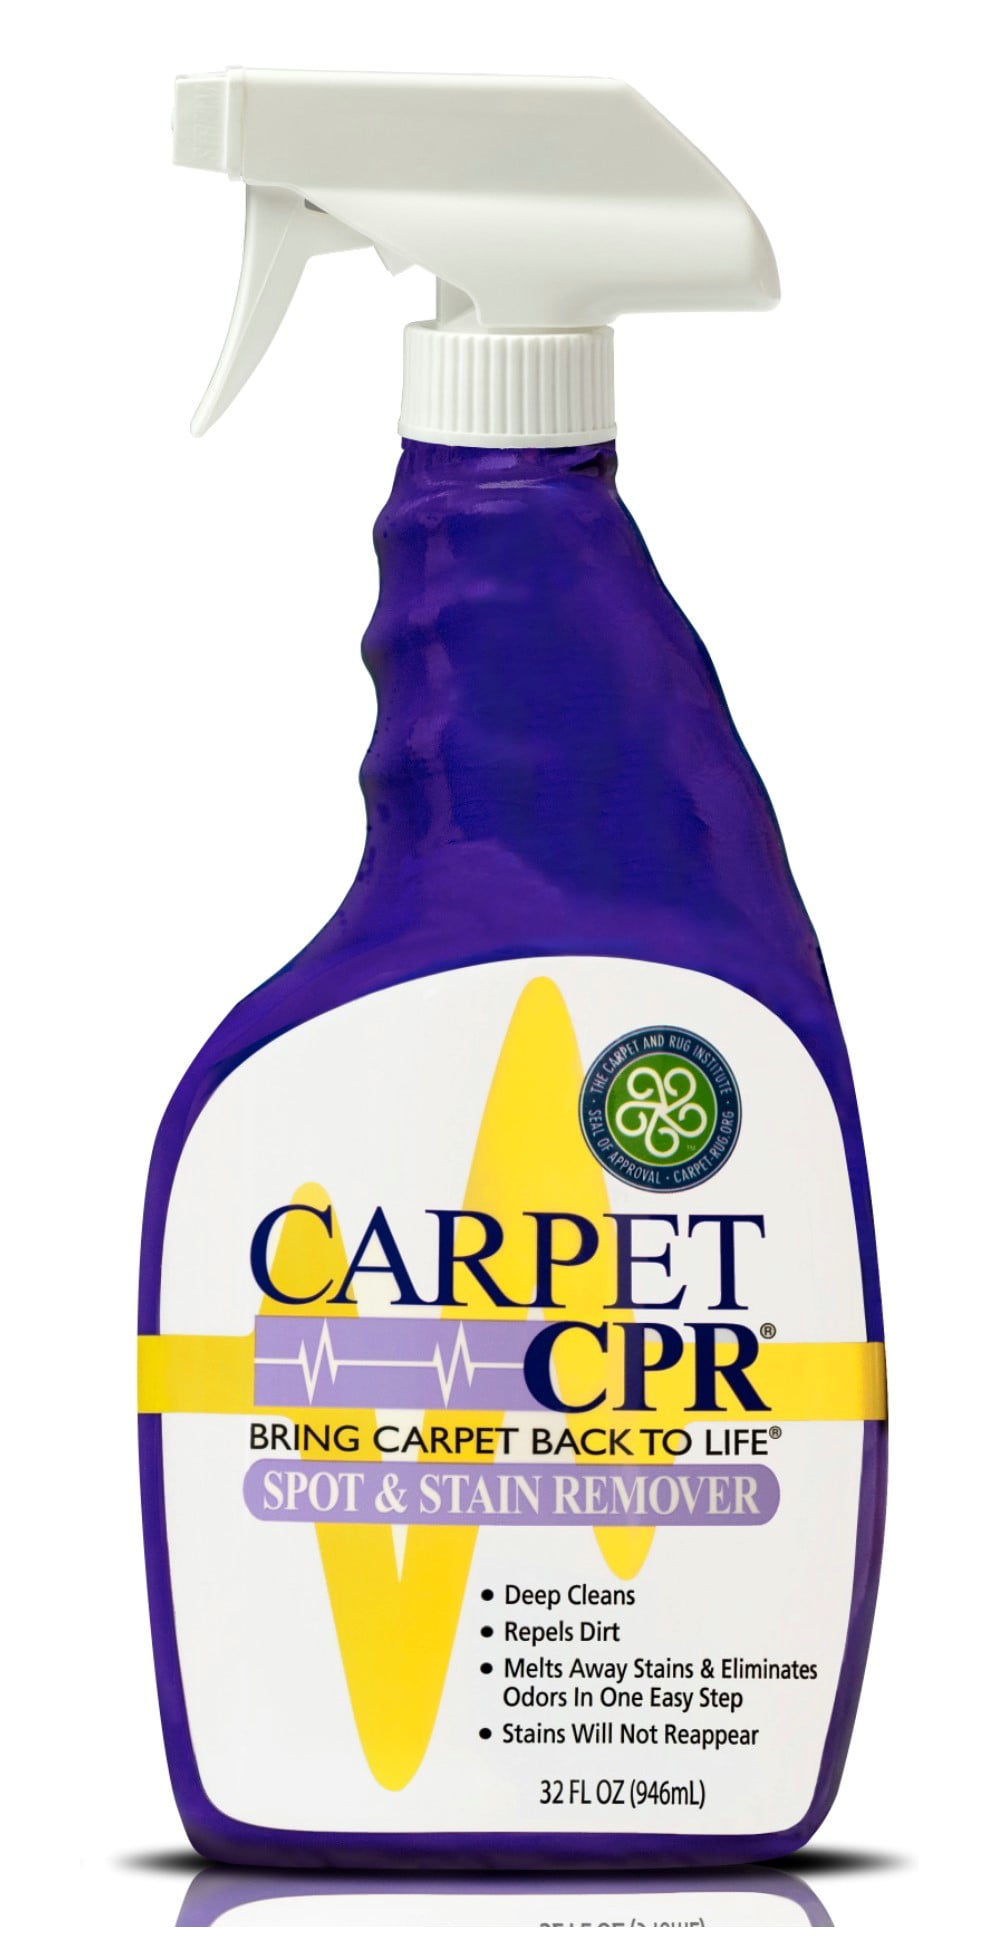  Carpet CPR  2-in-1 Spot & Stain Remover (32oz